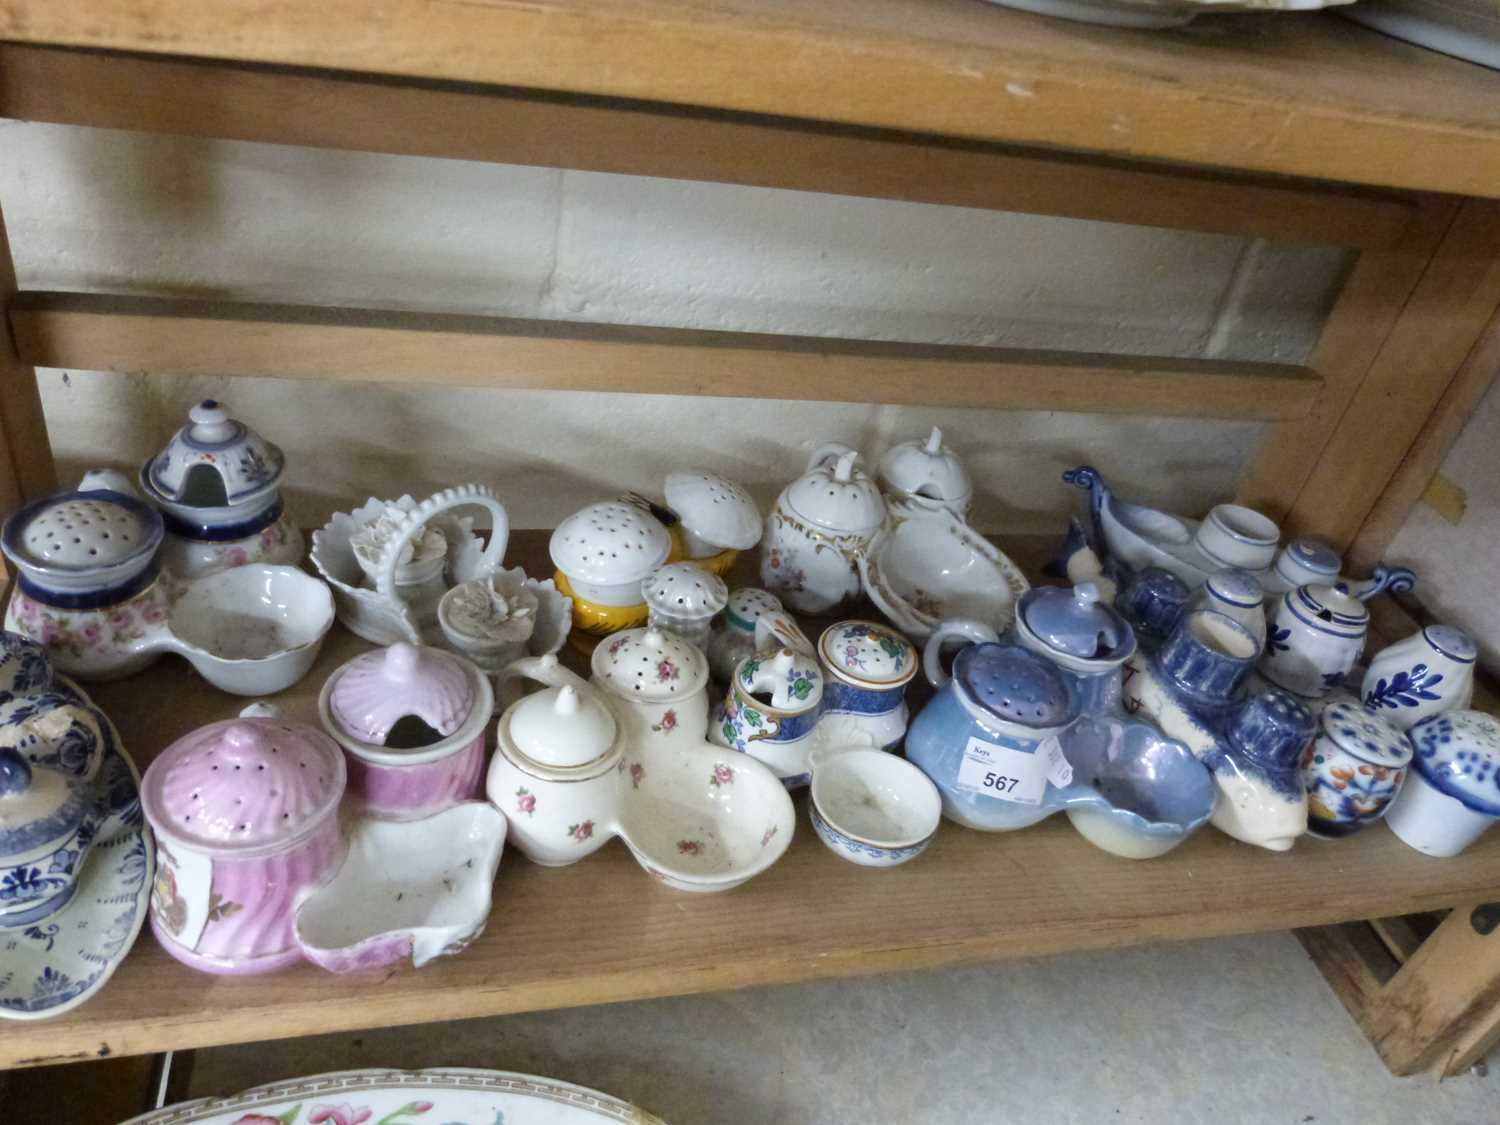 Quantity of various ceramic cruet sets